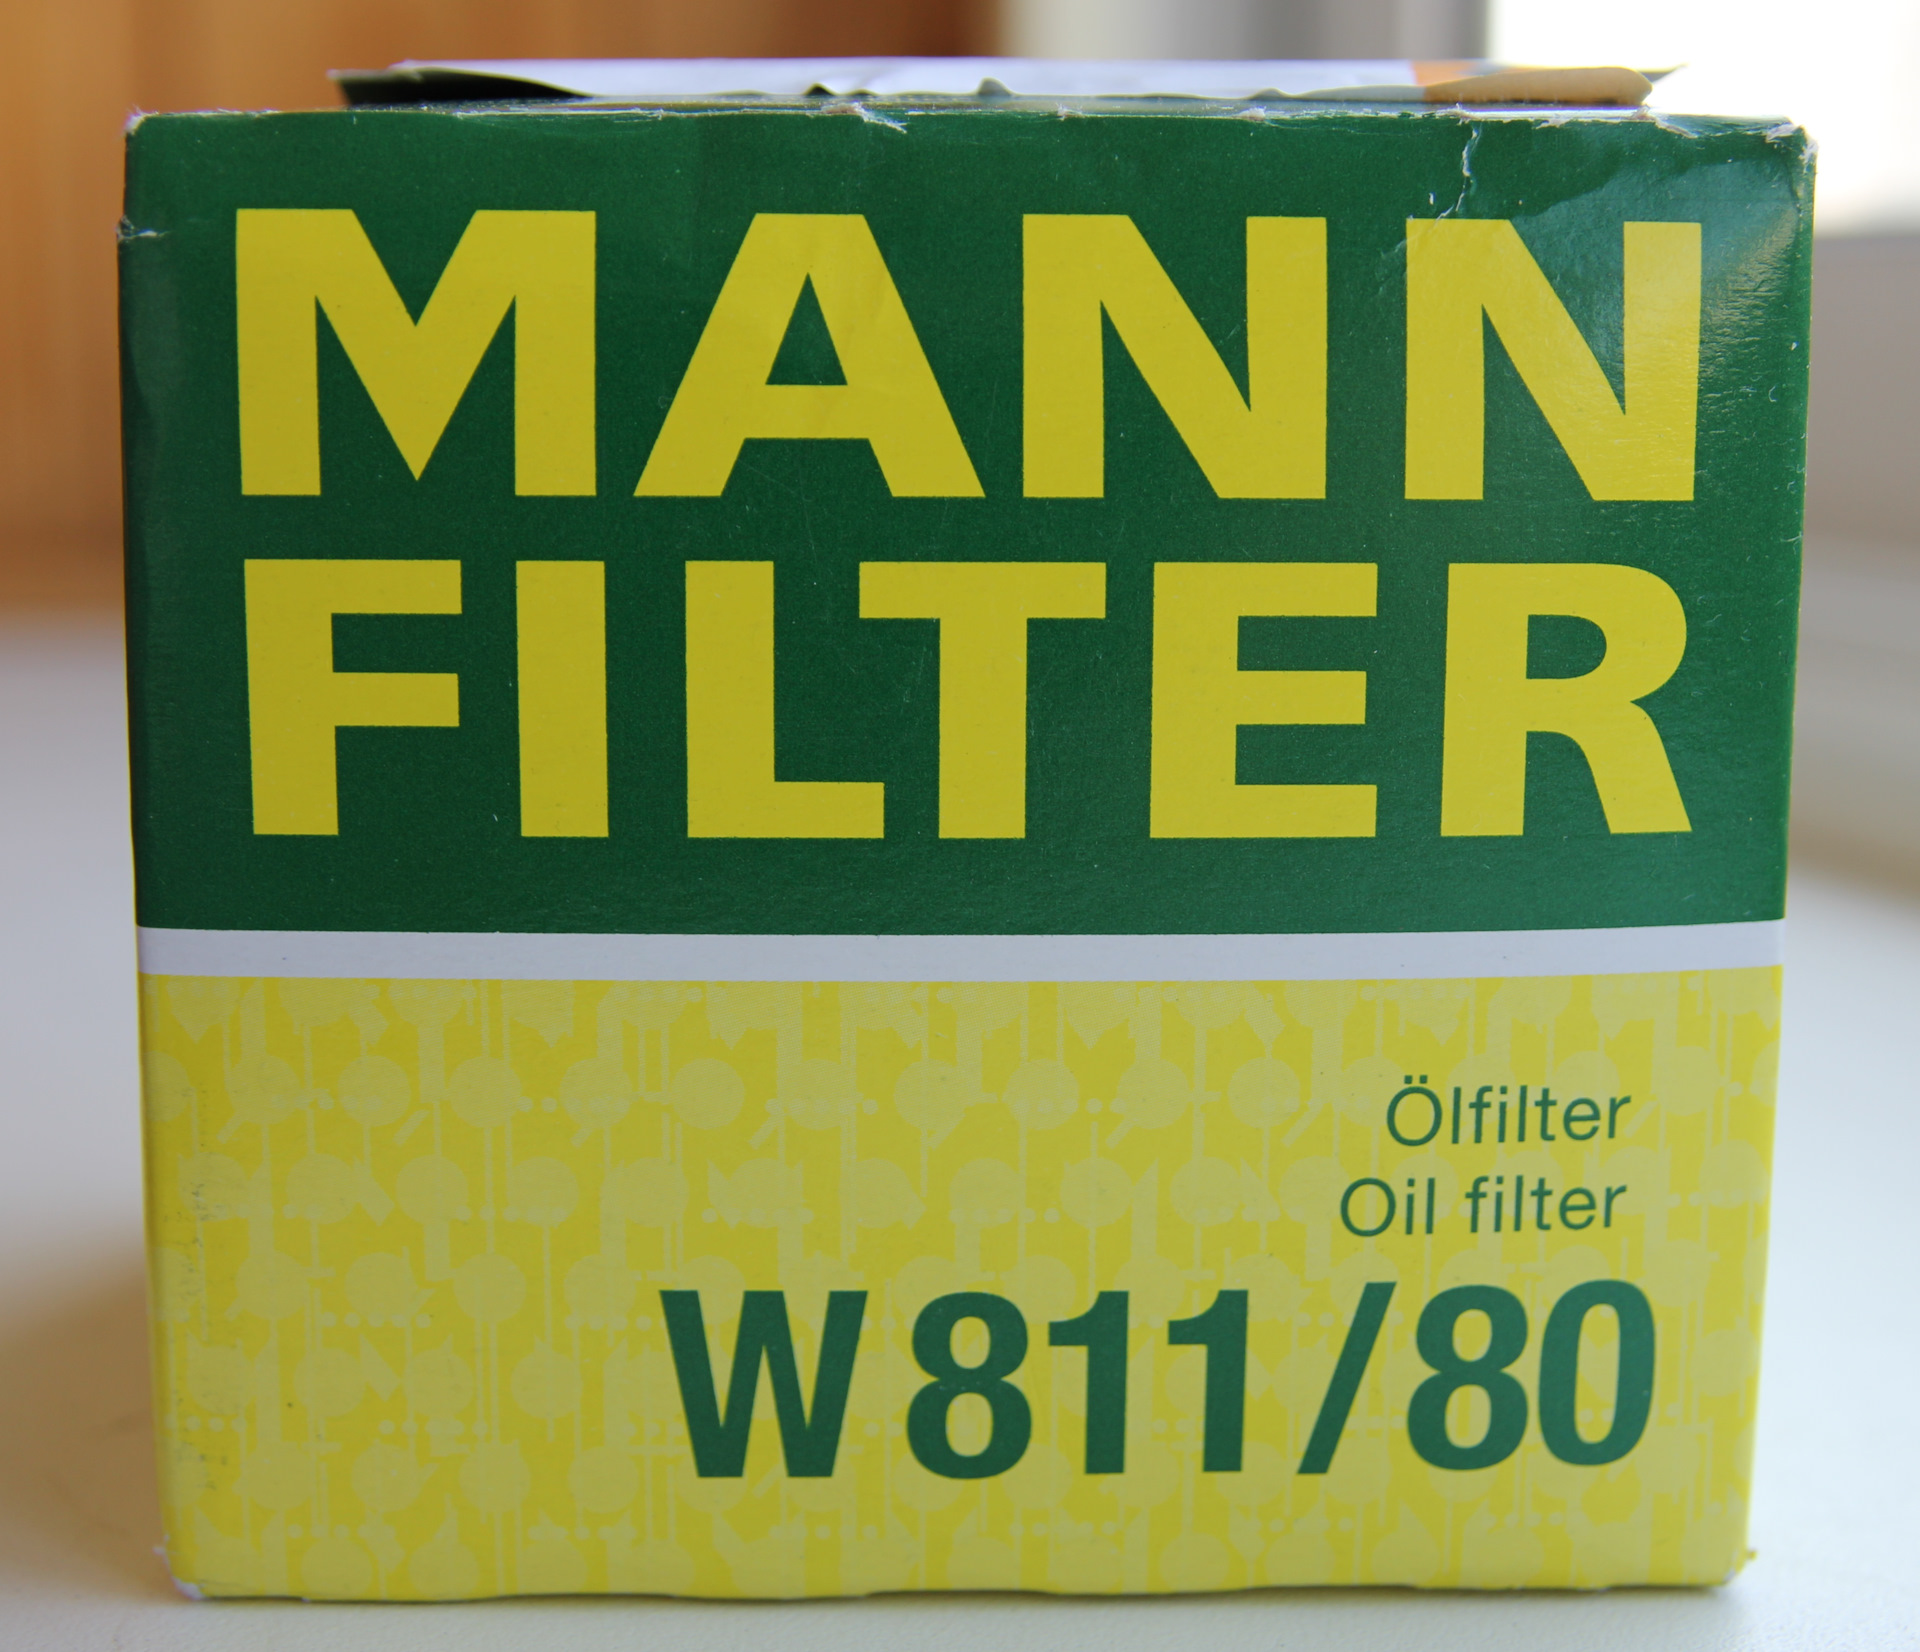 Как отличить фильтр манн. Фильтр Mann w811/80. Фильтр масляный Mann w 811/80. W81180 масляный фильтр (Mann-Filter). Фильтр Манн w811/80 Китай.